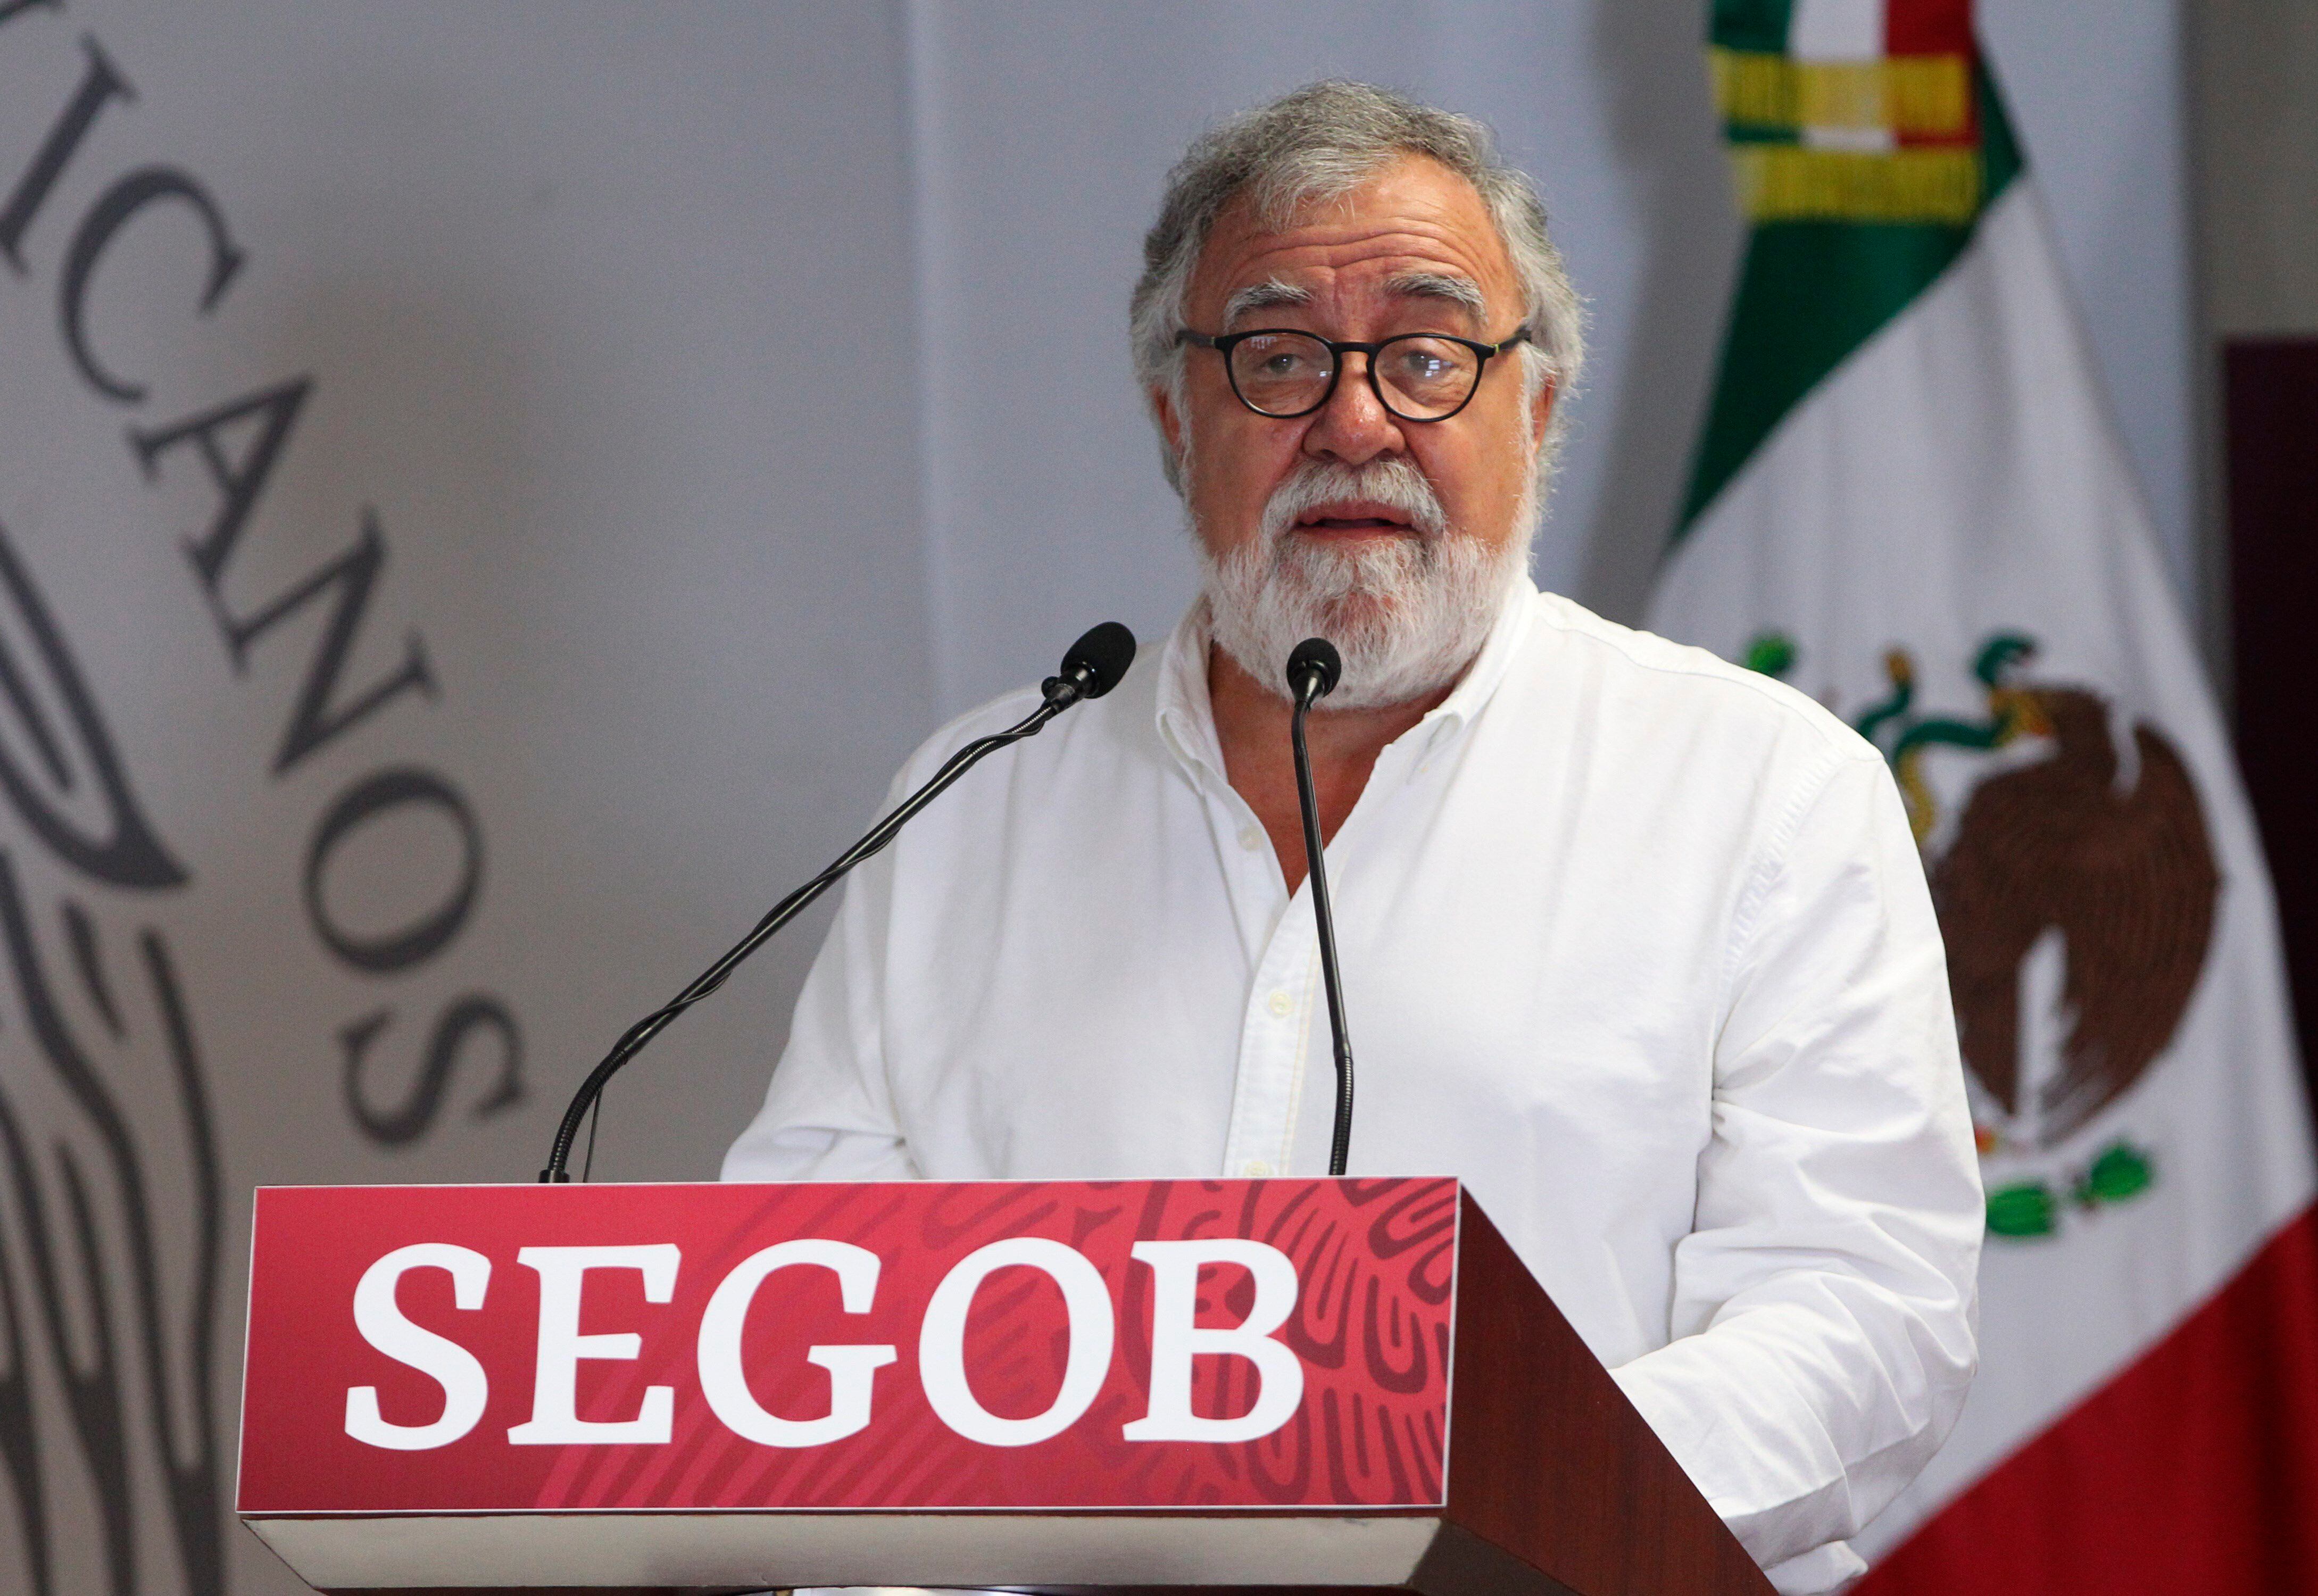 El subsecretario de Gobernación de México, Alejandro Encinas, reconoció que habrá más cambios en Segob. (Foto: EFE/Mario Guzmán/Archivo)
